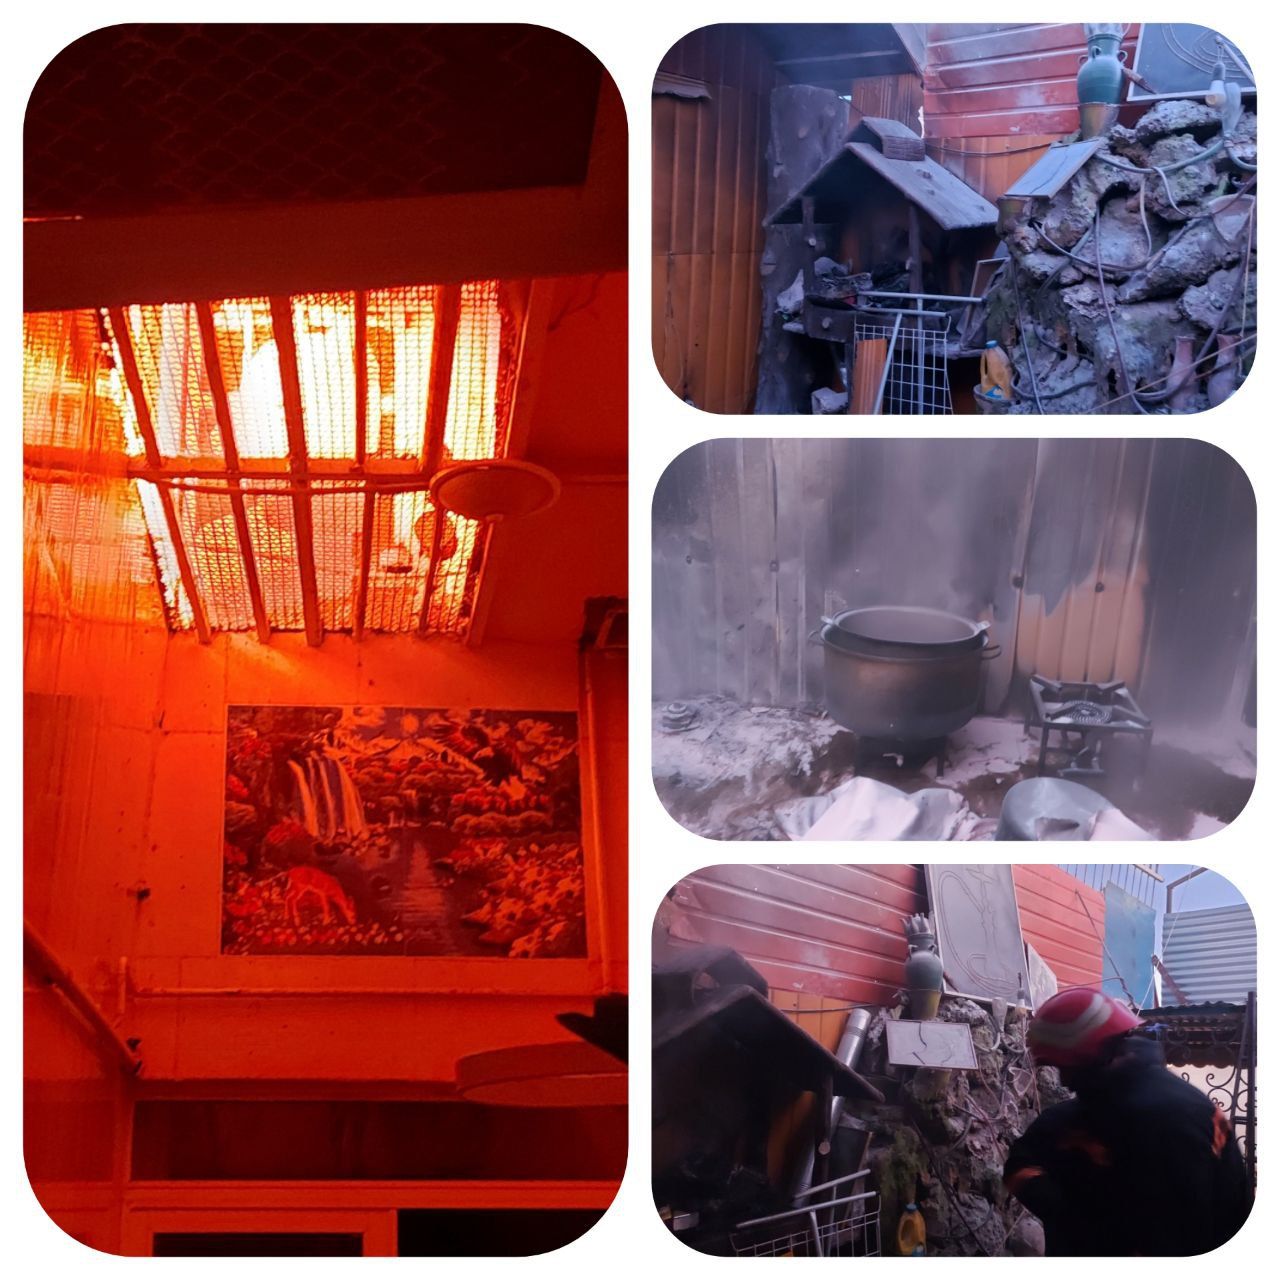 مهار آتش سوزی در پشت بام یک منزل مسکونی در خمینی شهر